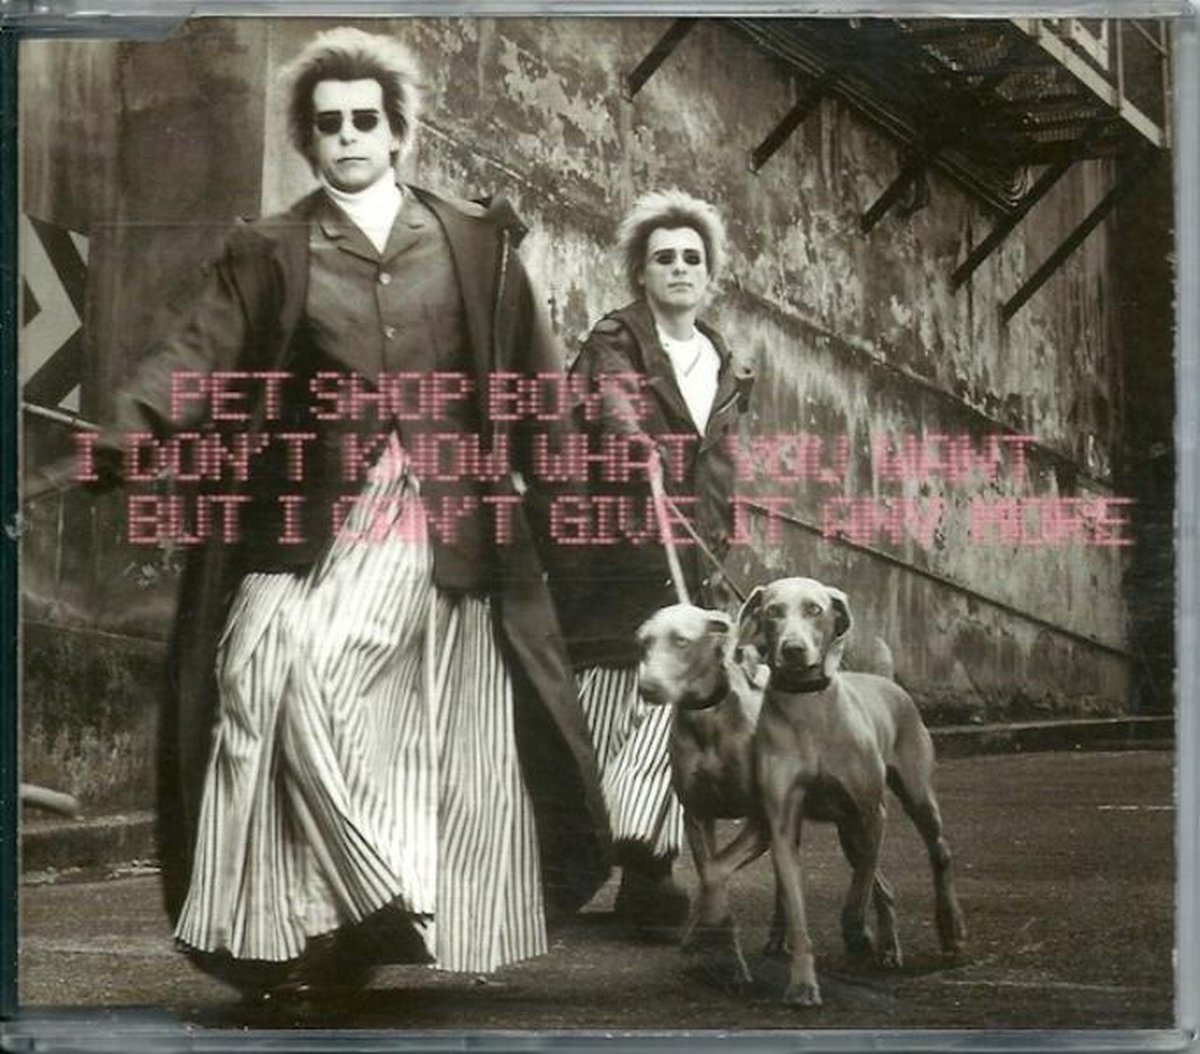 I Don't Know What You Want But I Can't Give It Any More - Pet Shop Boys